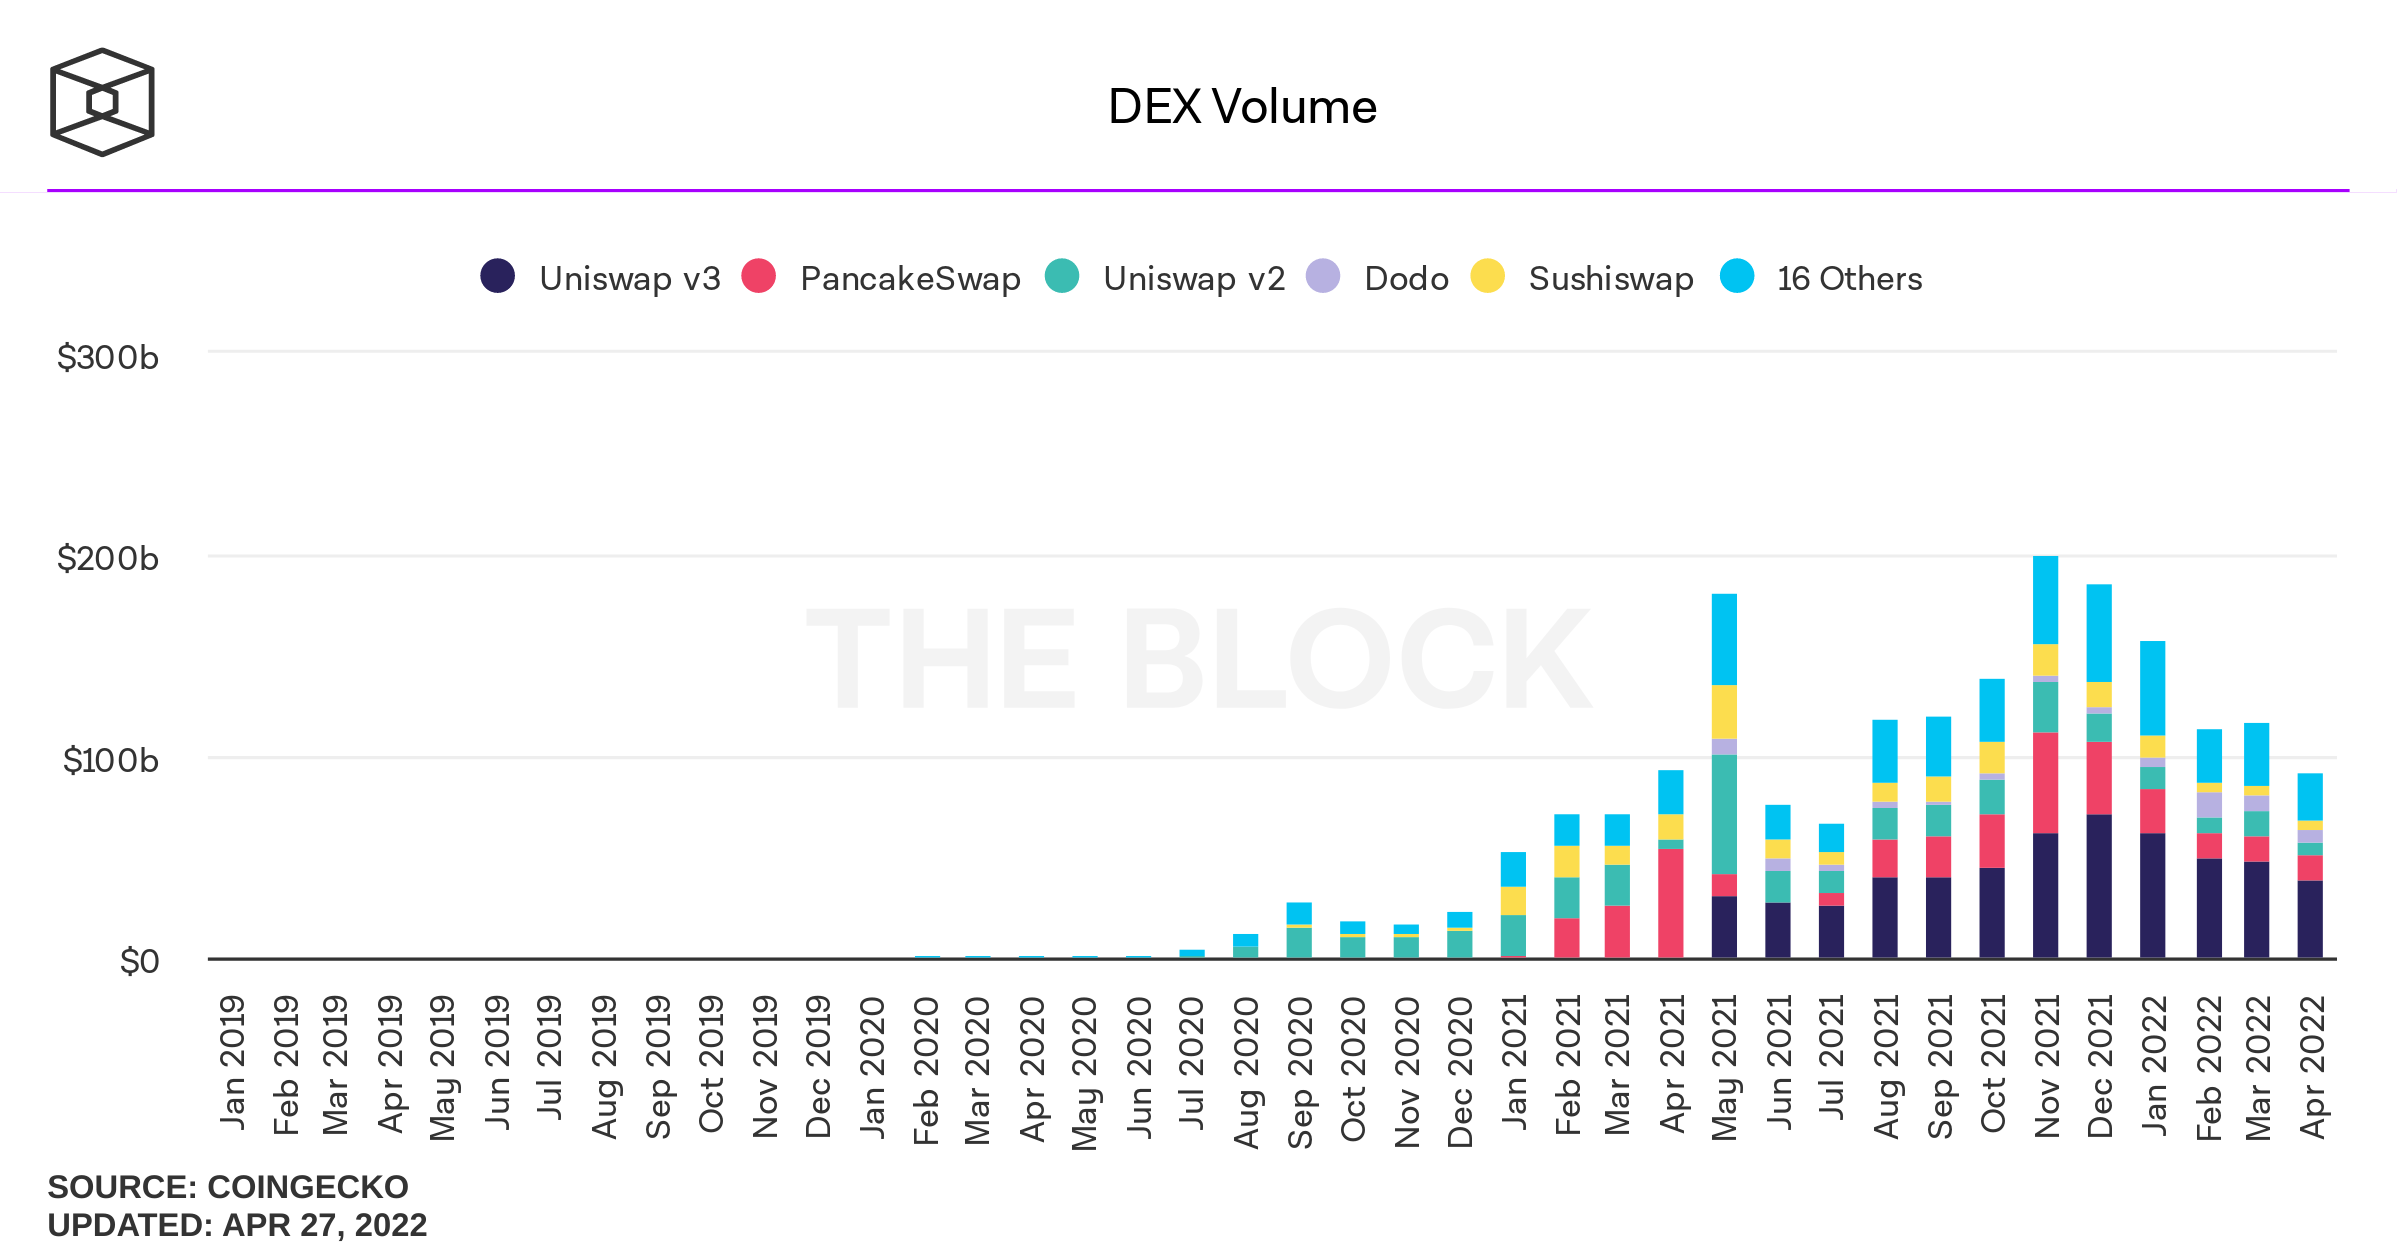 La valeur verrouillée dans Defi tombe en dessous de 200 milliards de dollars, le volume des échanges d'avril Dex chute de 21% de moins qu'en mars